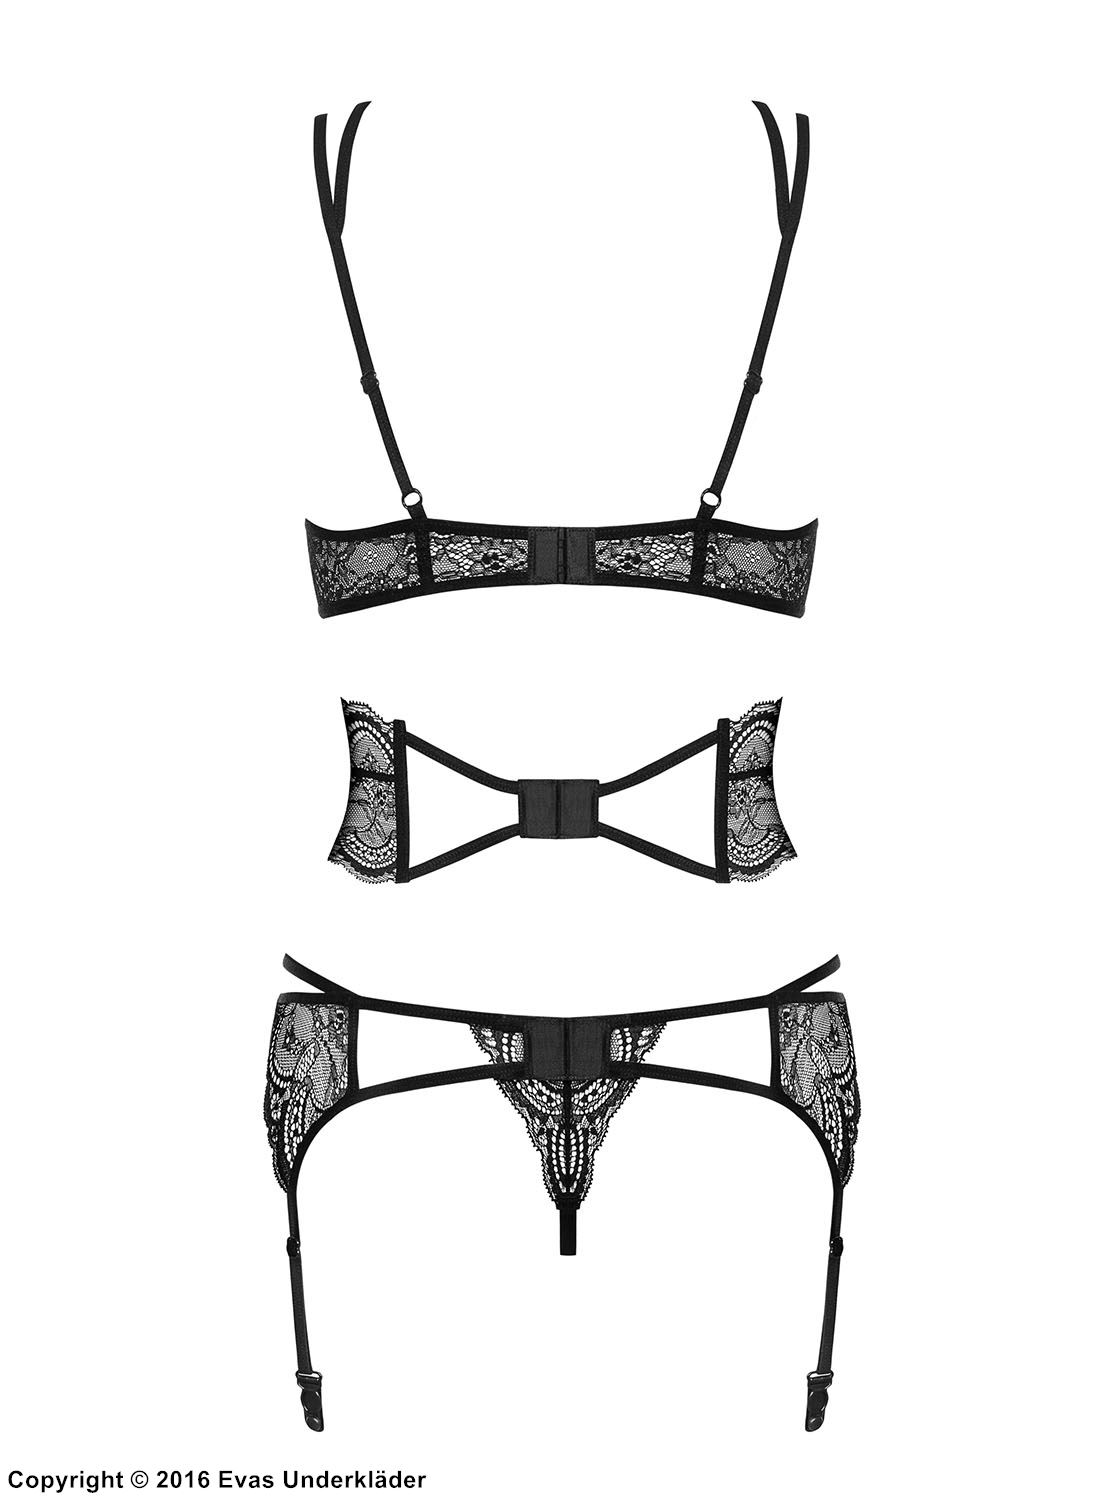 Seductive lingerie set, lace, crossing straps, belt